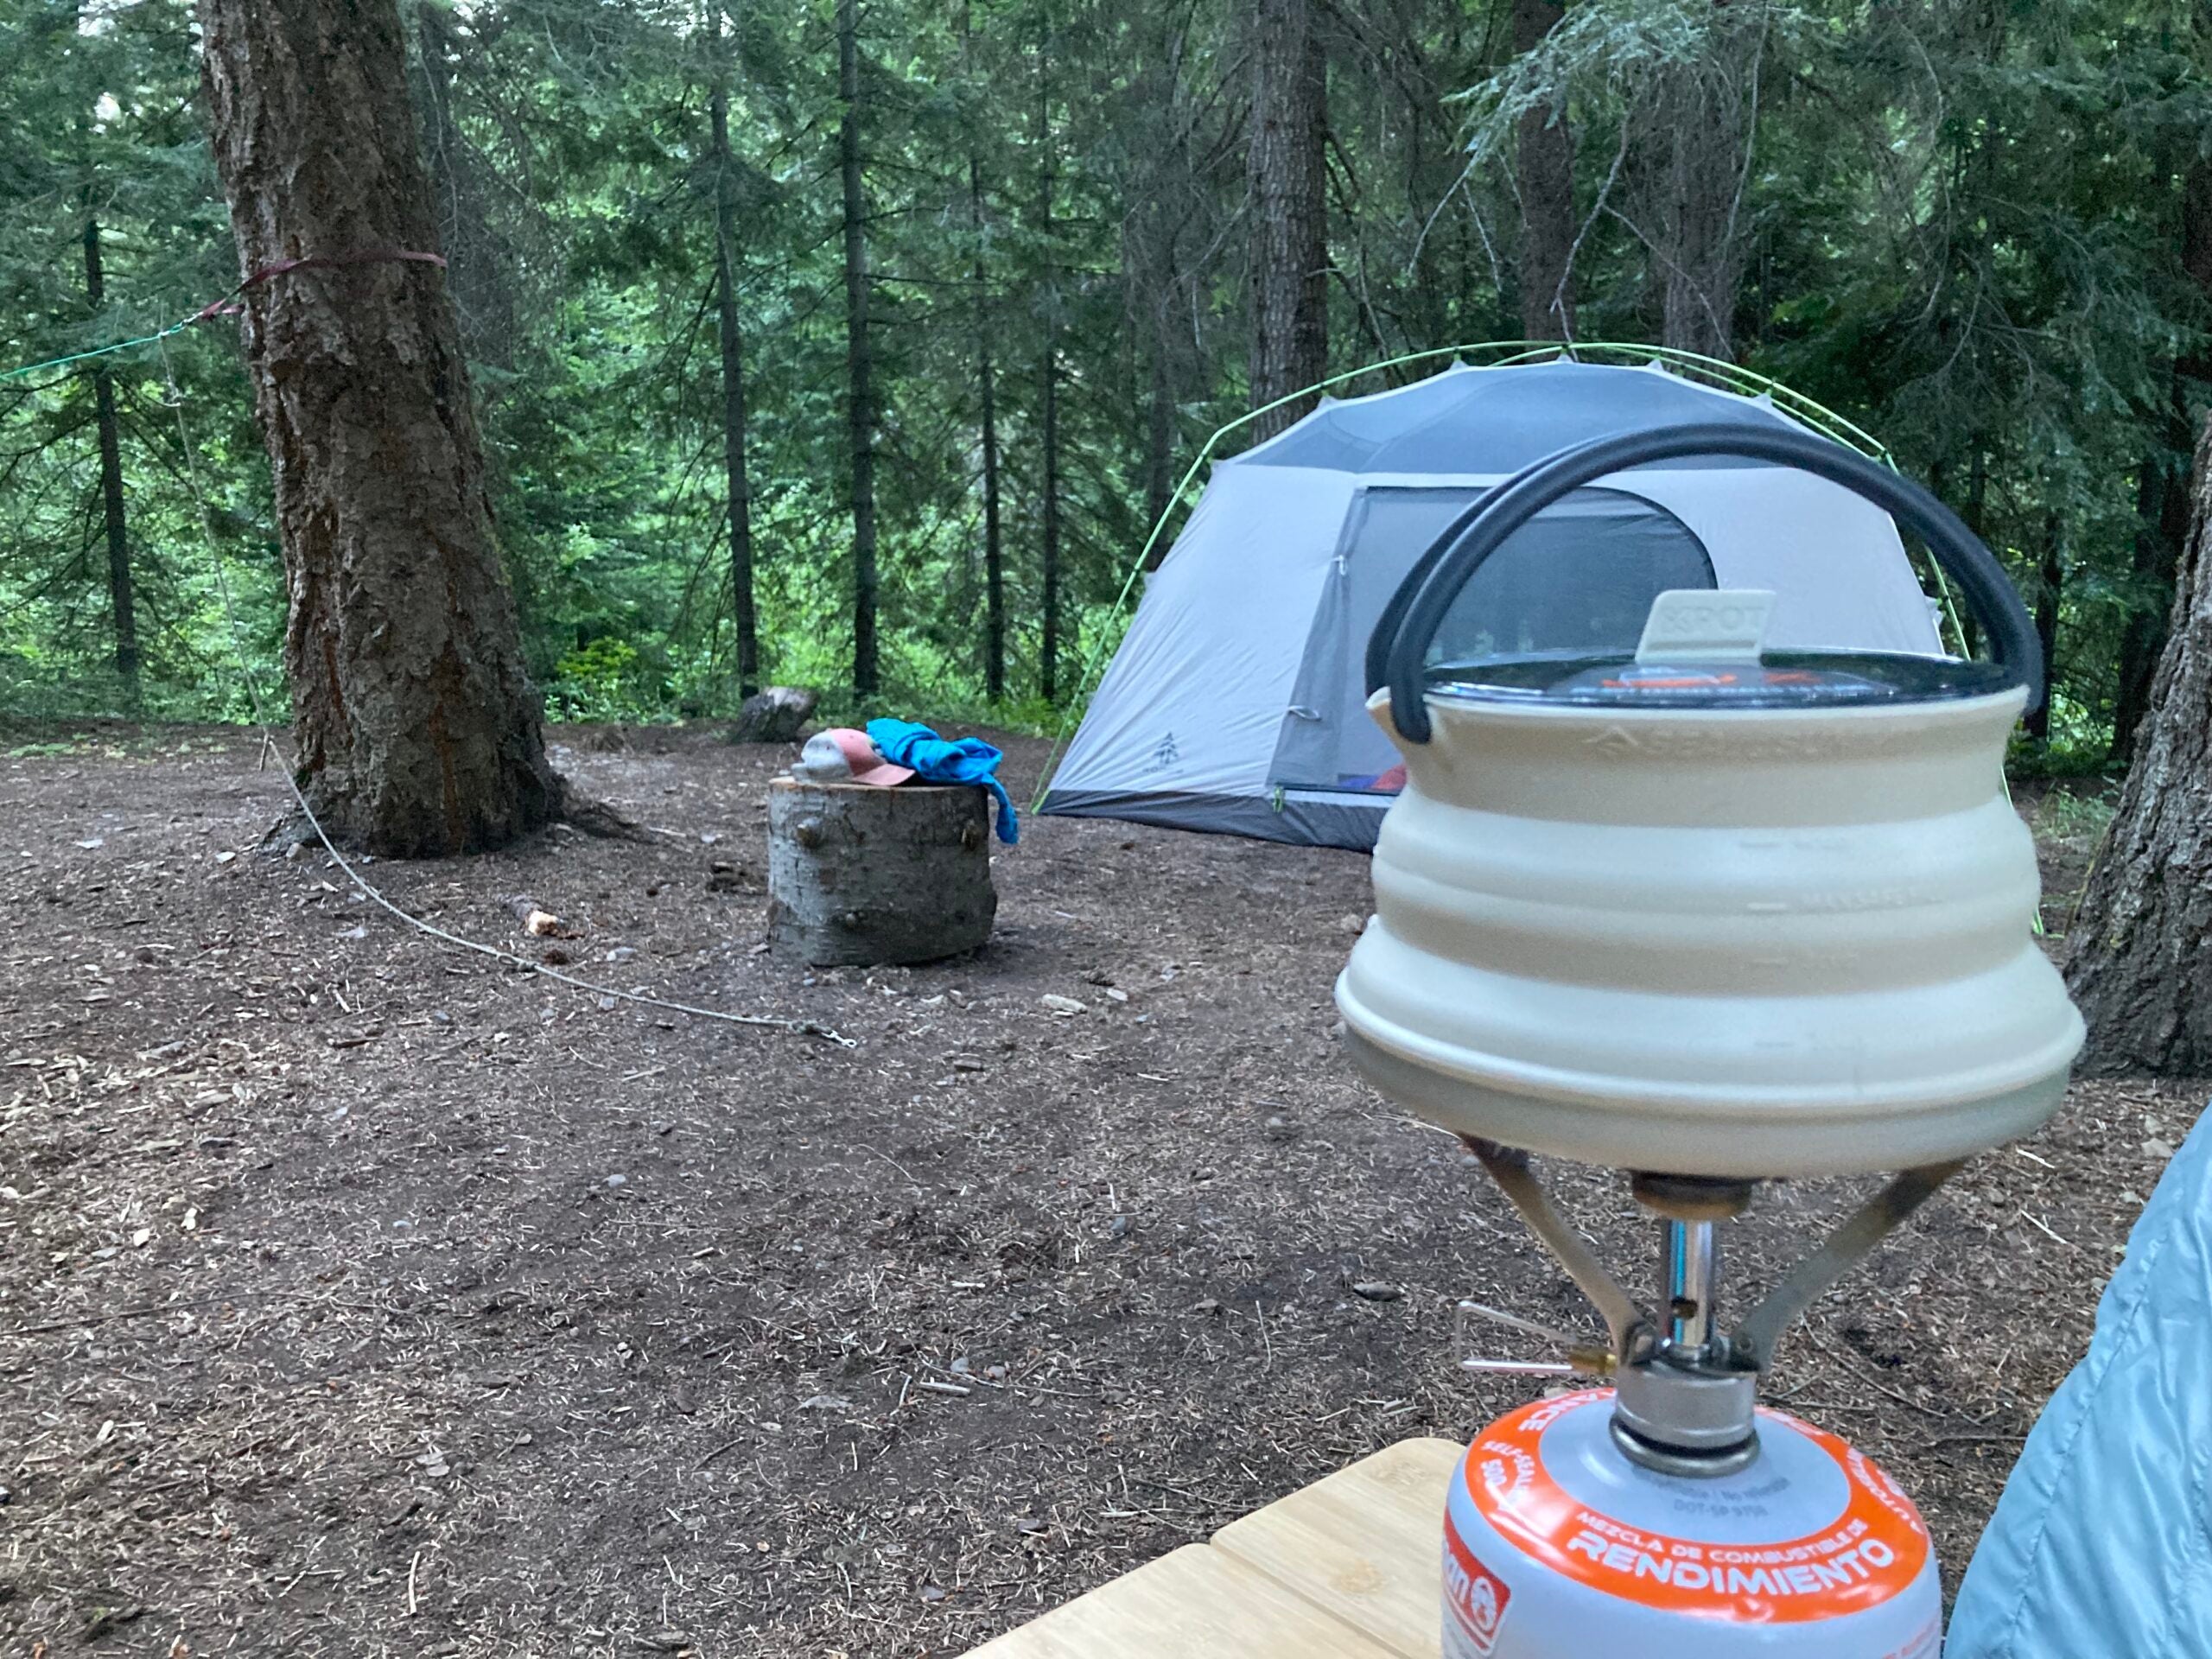 Camping photo